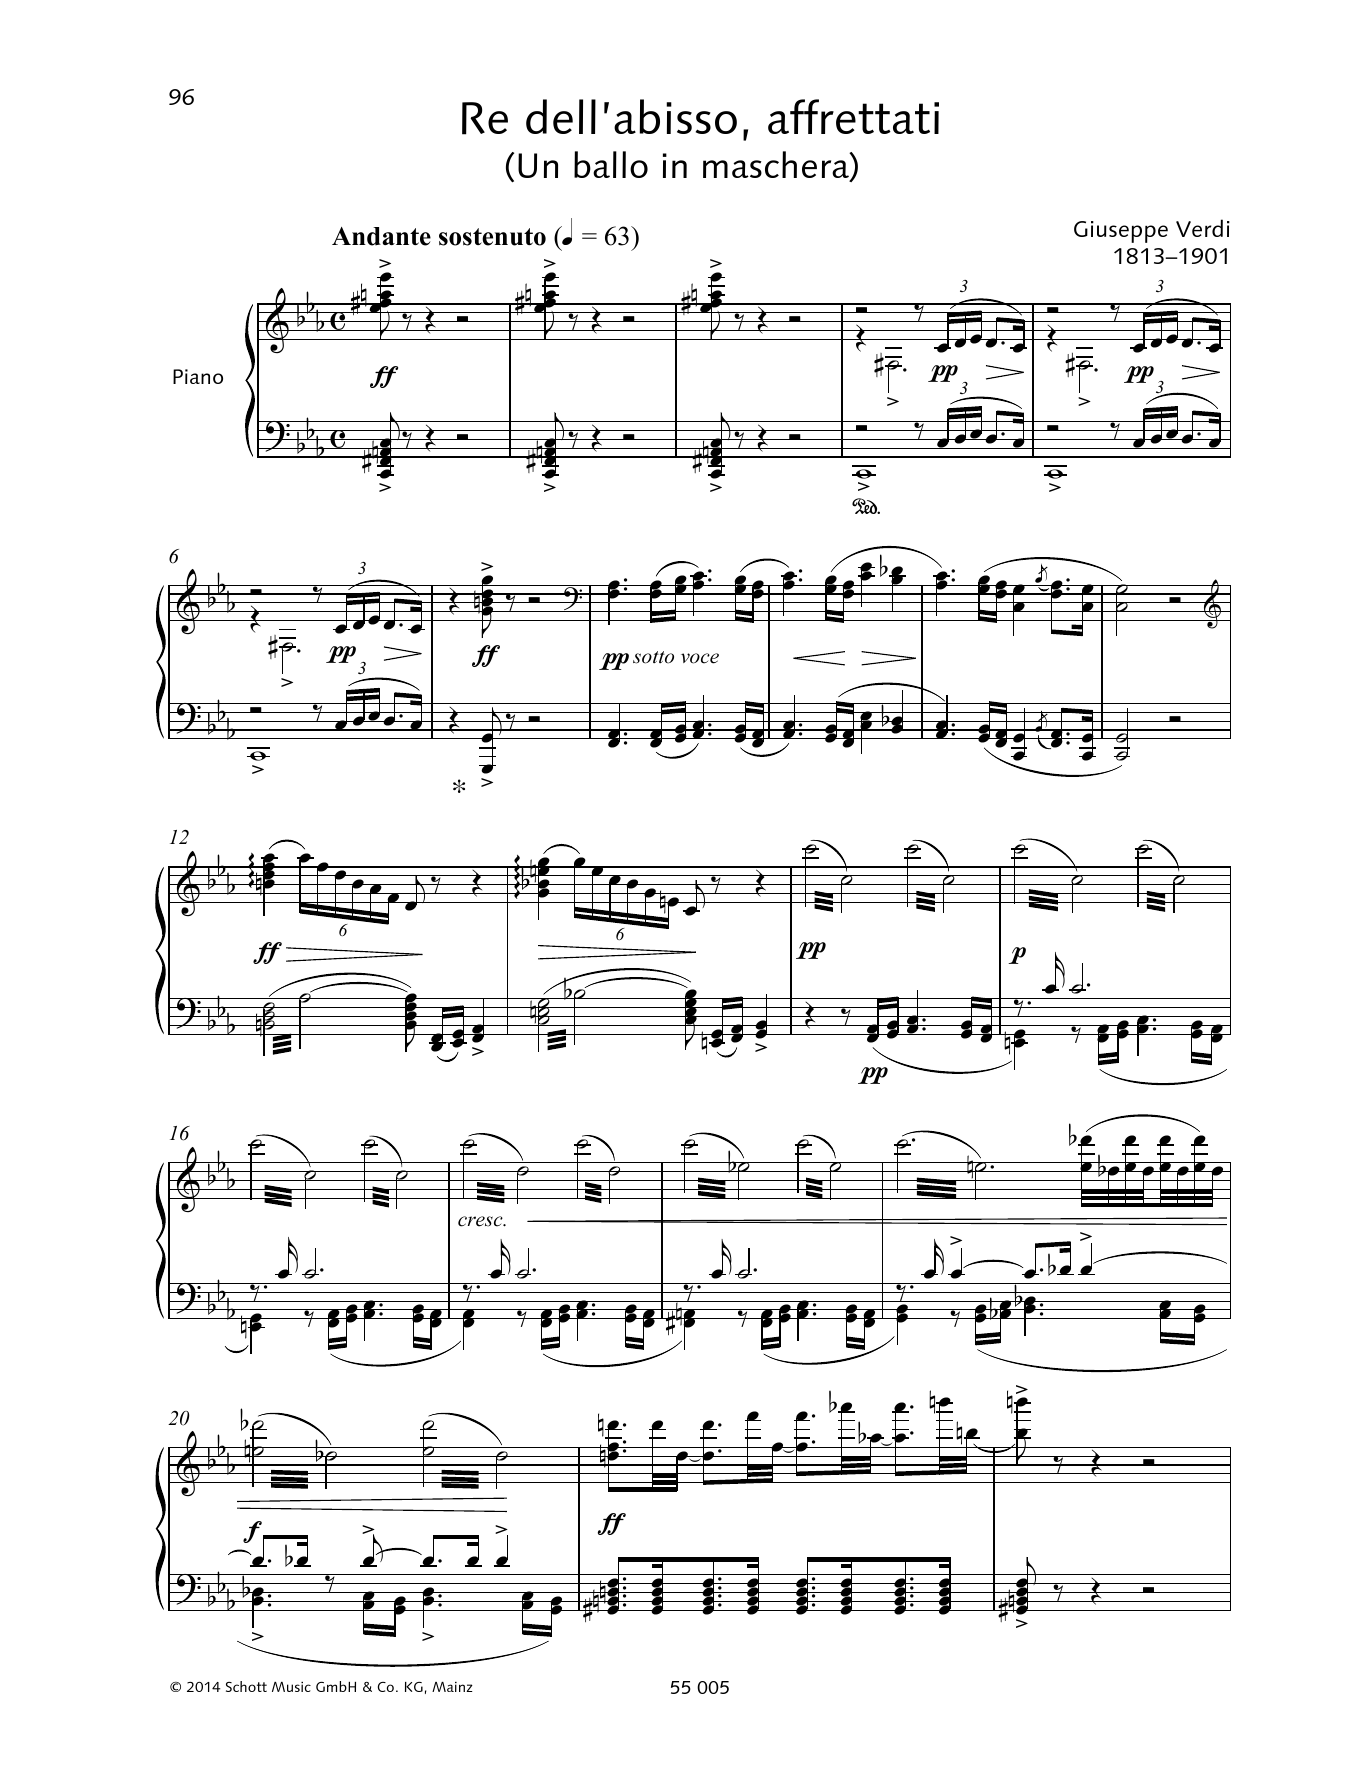 Download Giuseppe Verdi Re dell'abisso, affrettati Sheet Music